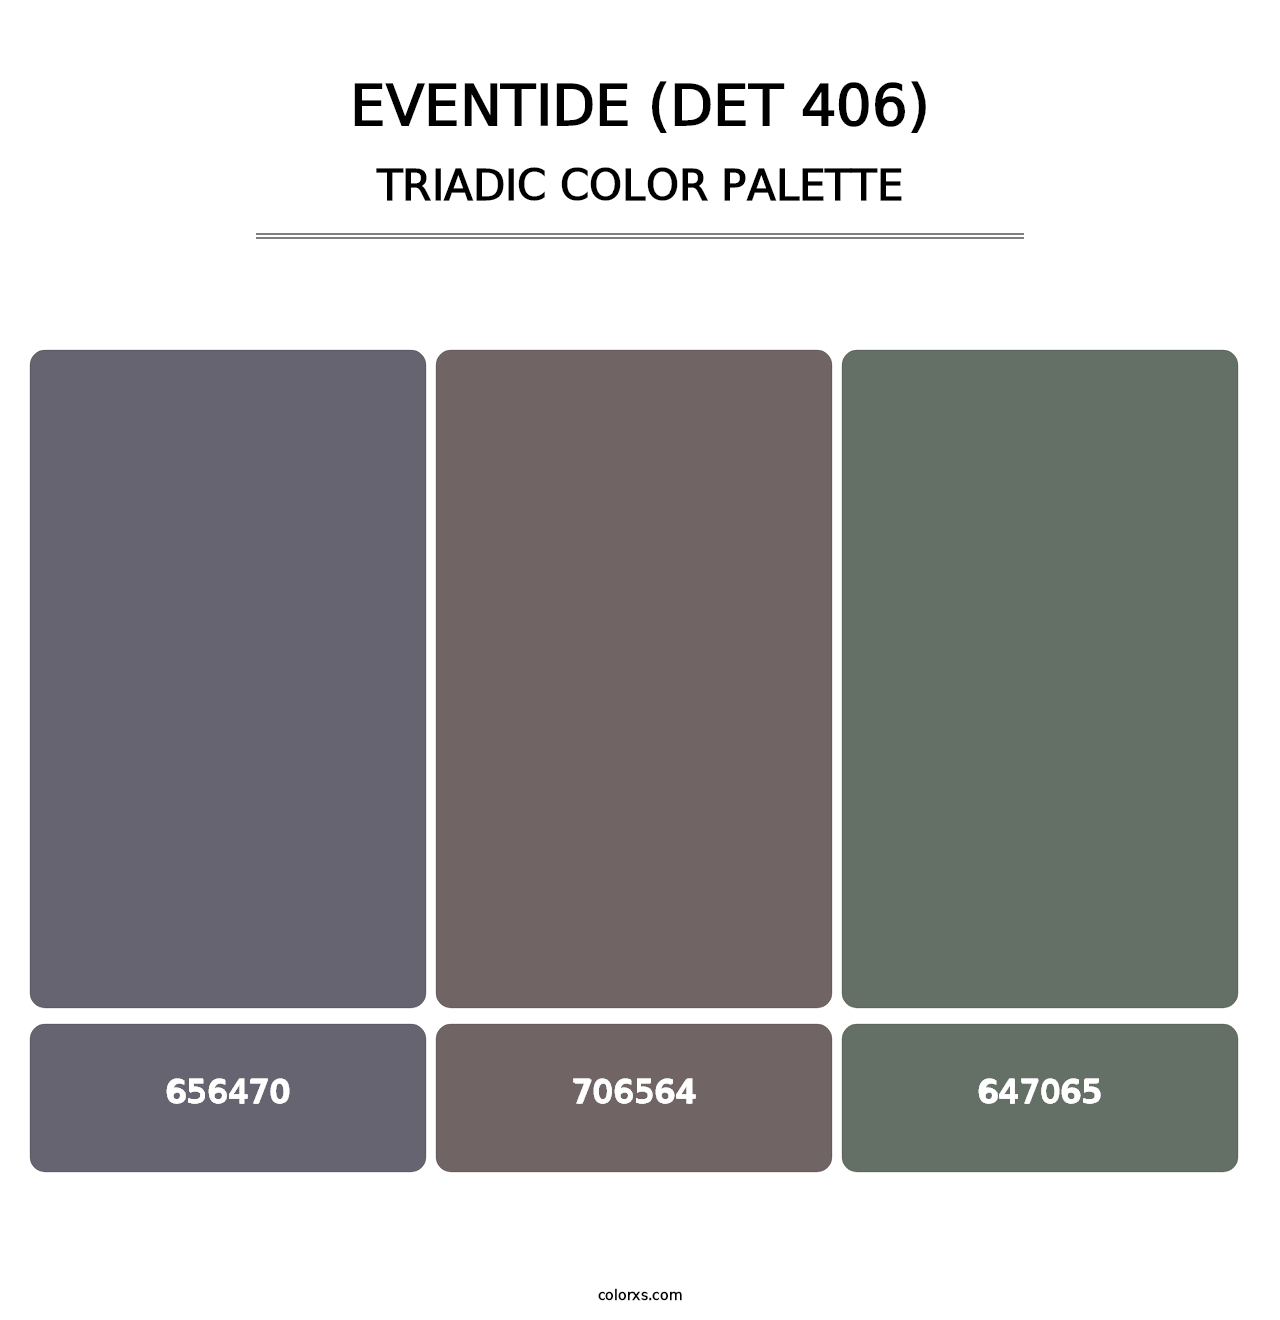 Eventide (DET 406) - Triadic Color Palette